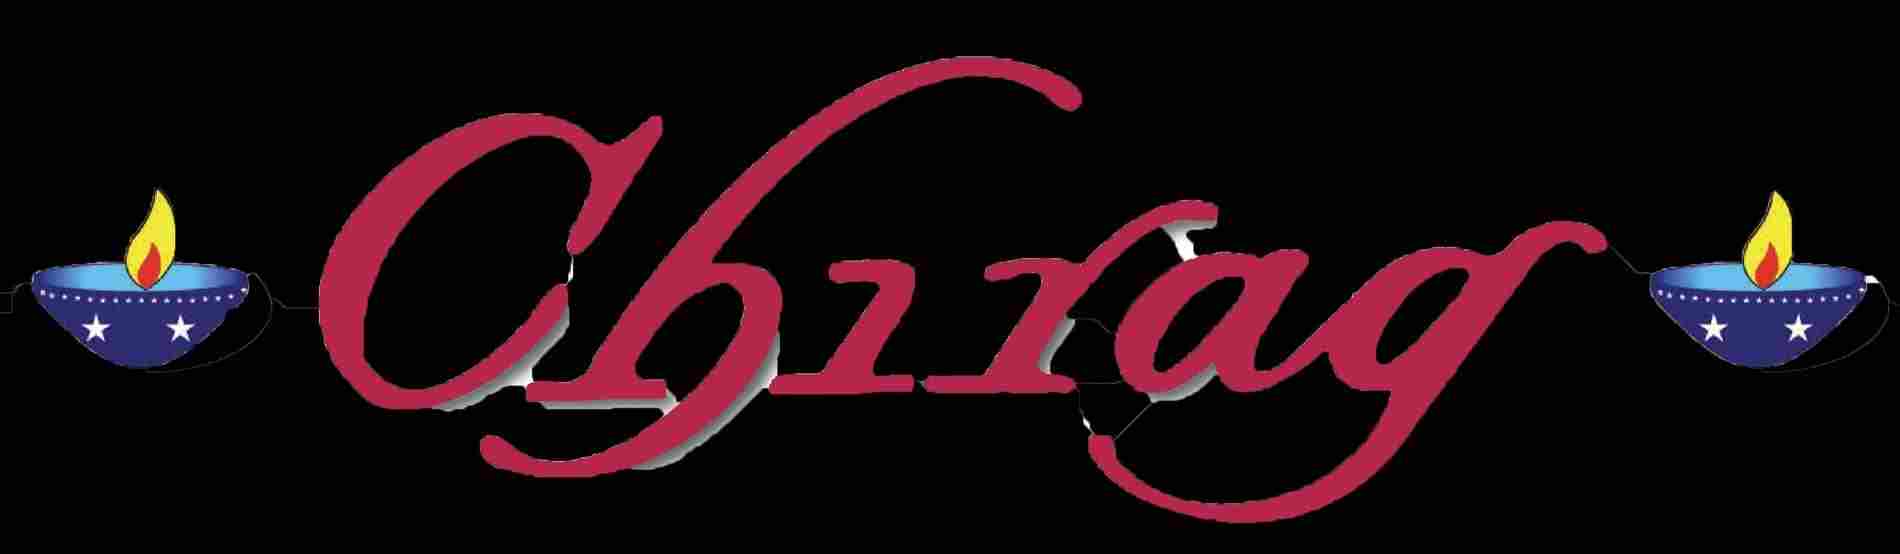 Chiraq Logo - Chiraq Logo | www.topsimages.com